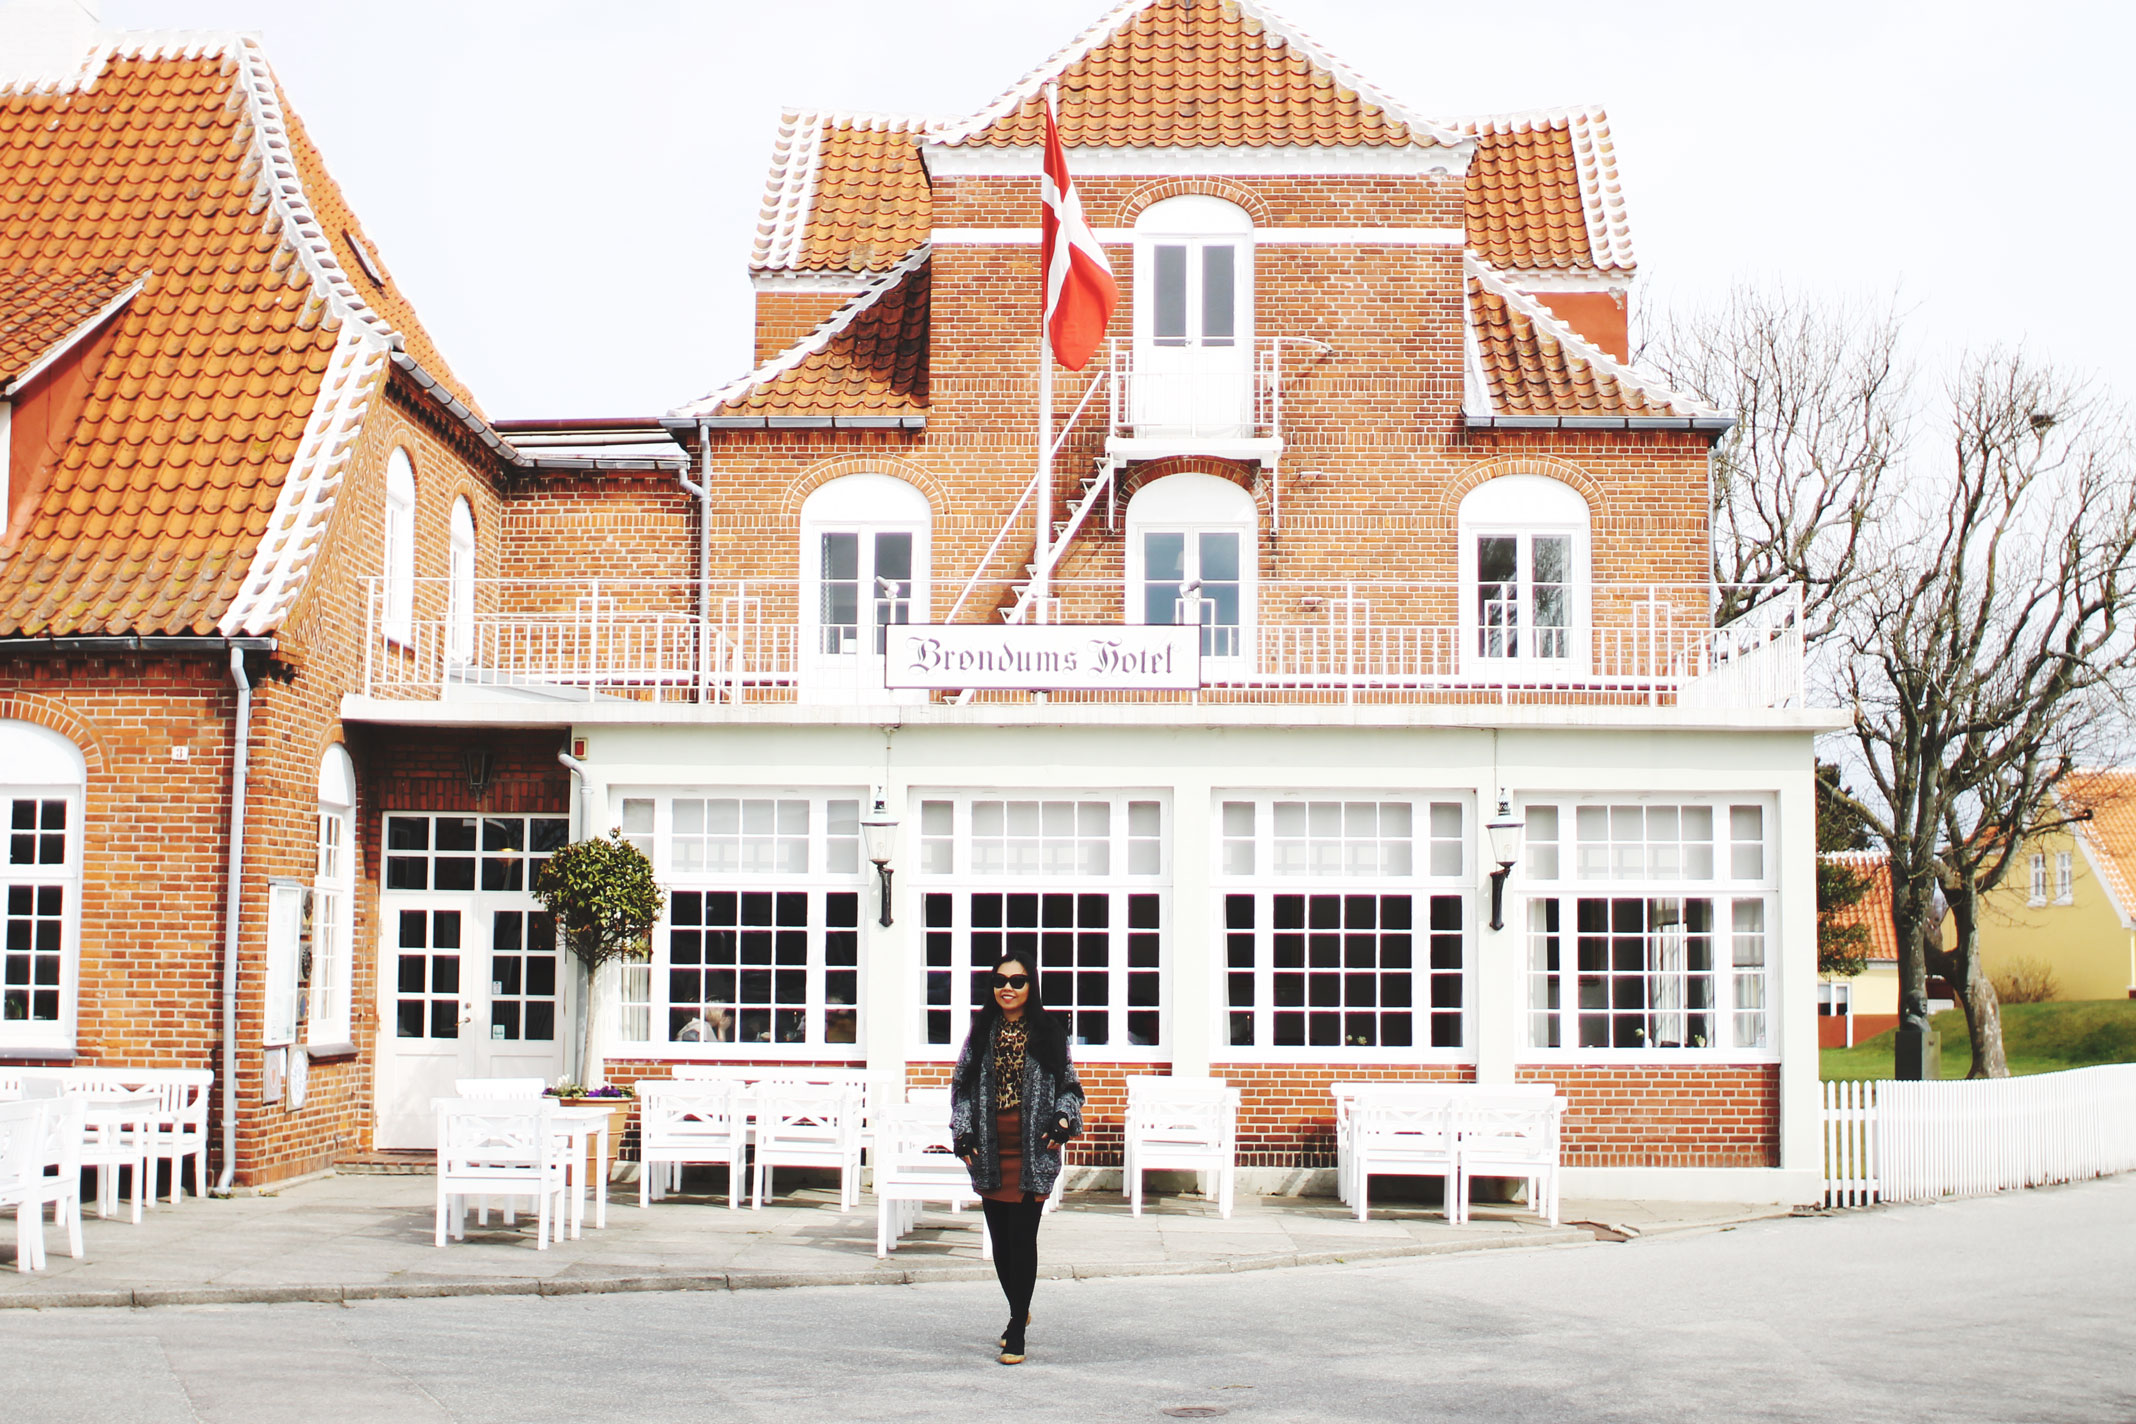 Styleat30 Blog - Visit Skagen, Denmark, Travel Guide - 19